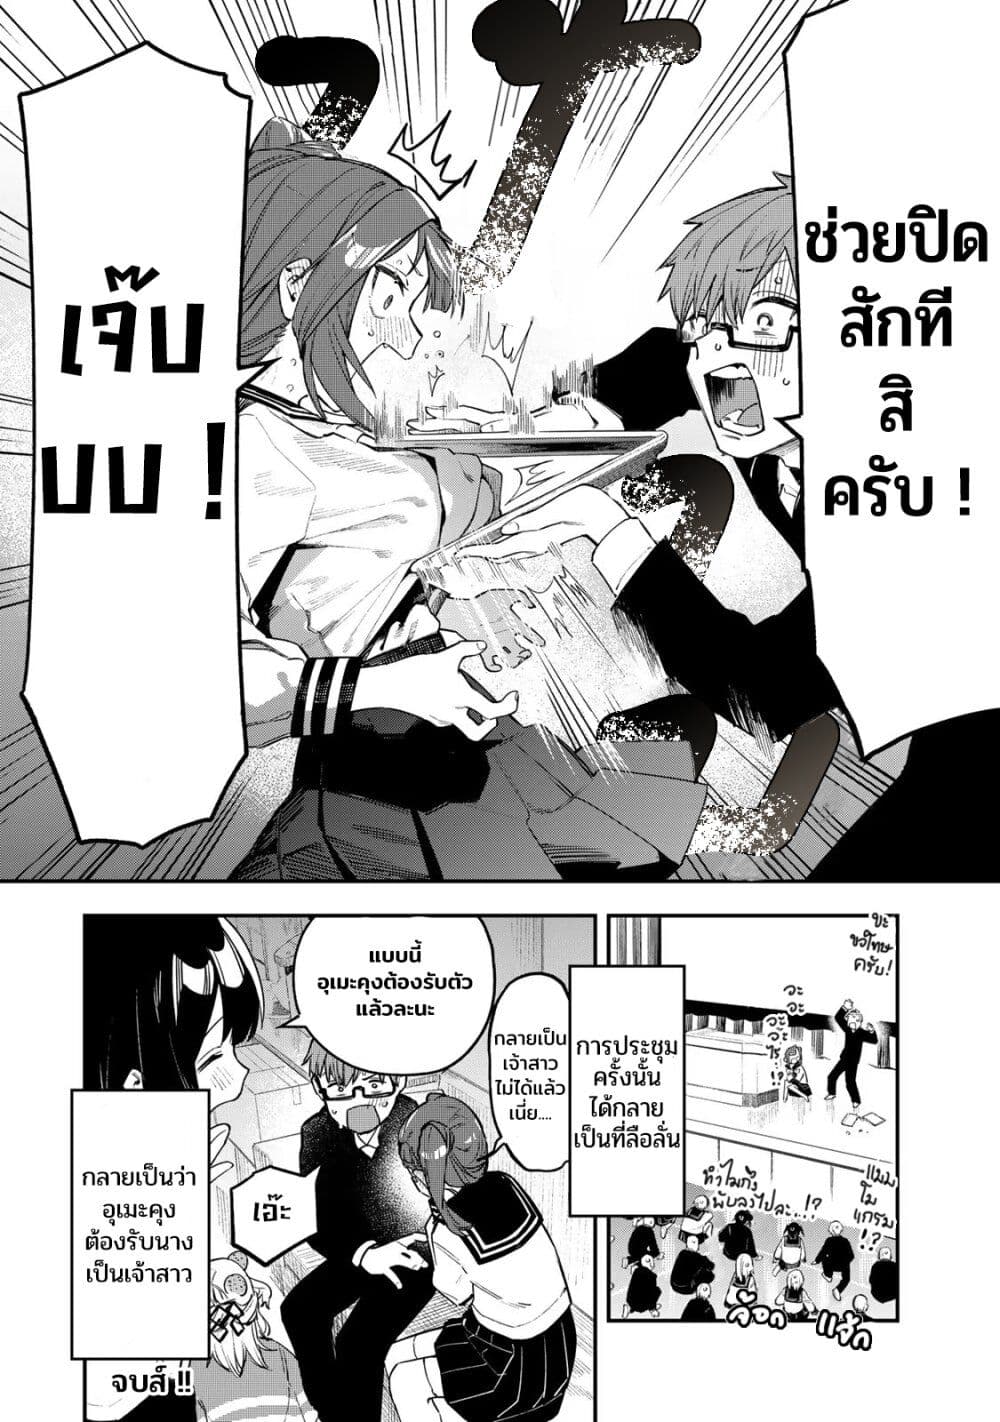 Seitokai ni mo Ana wa Aru! 6 (8)